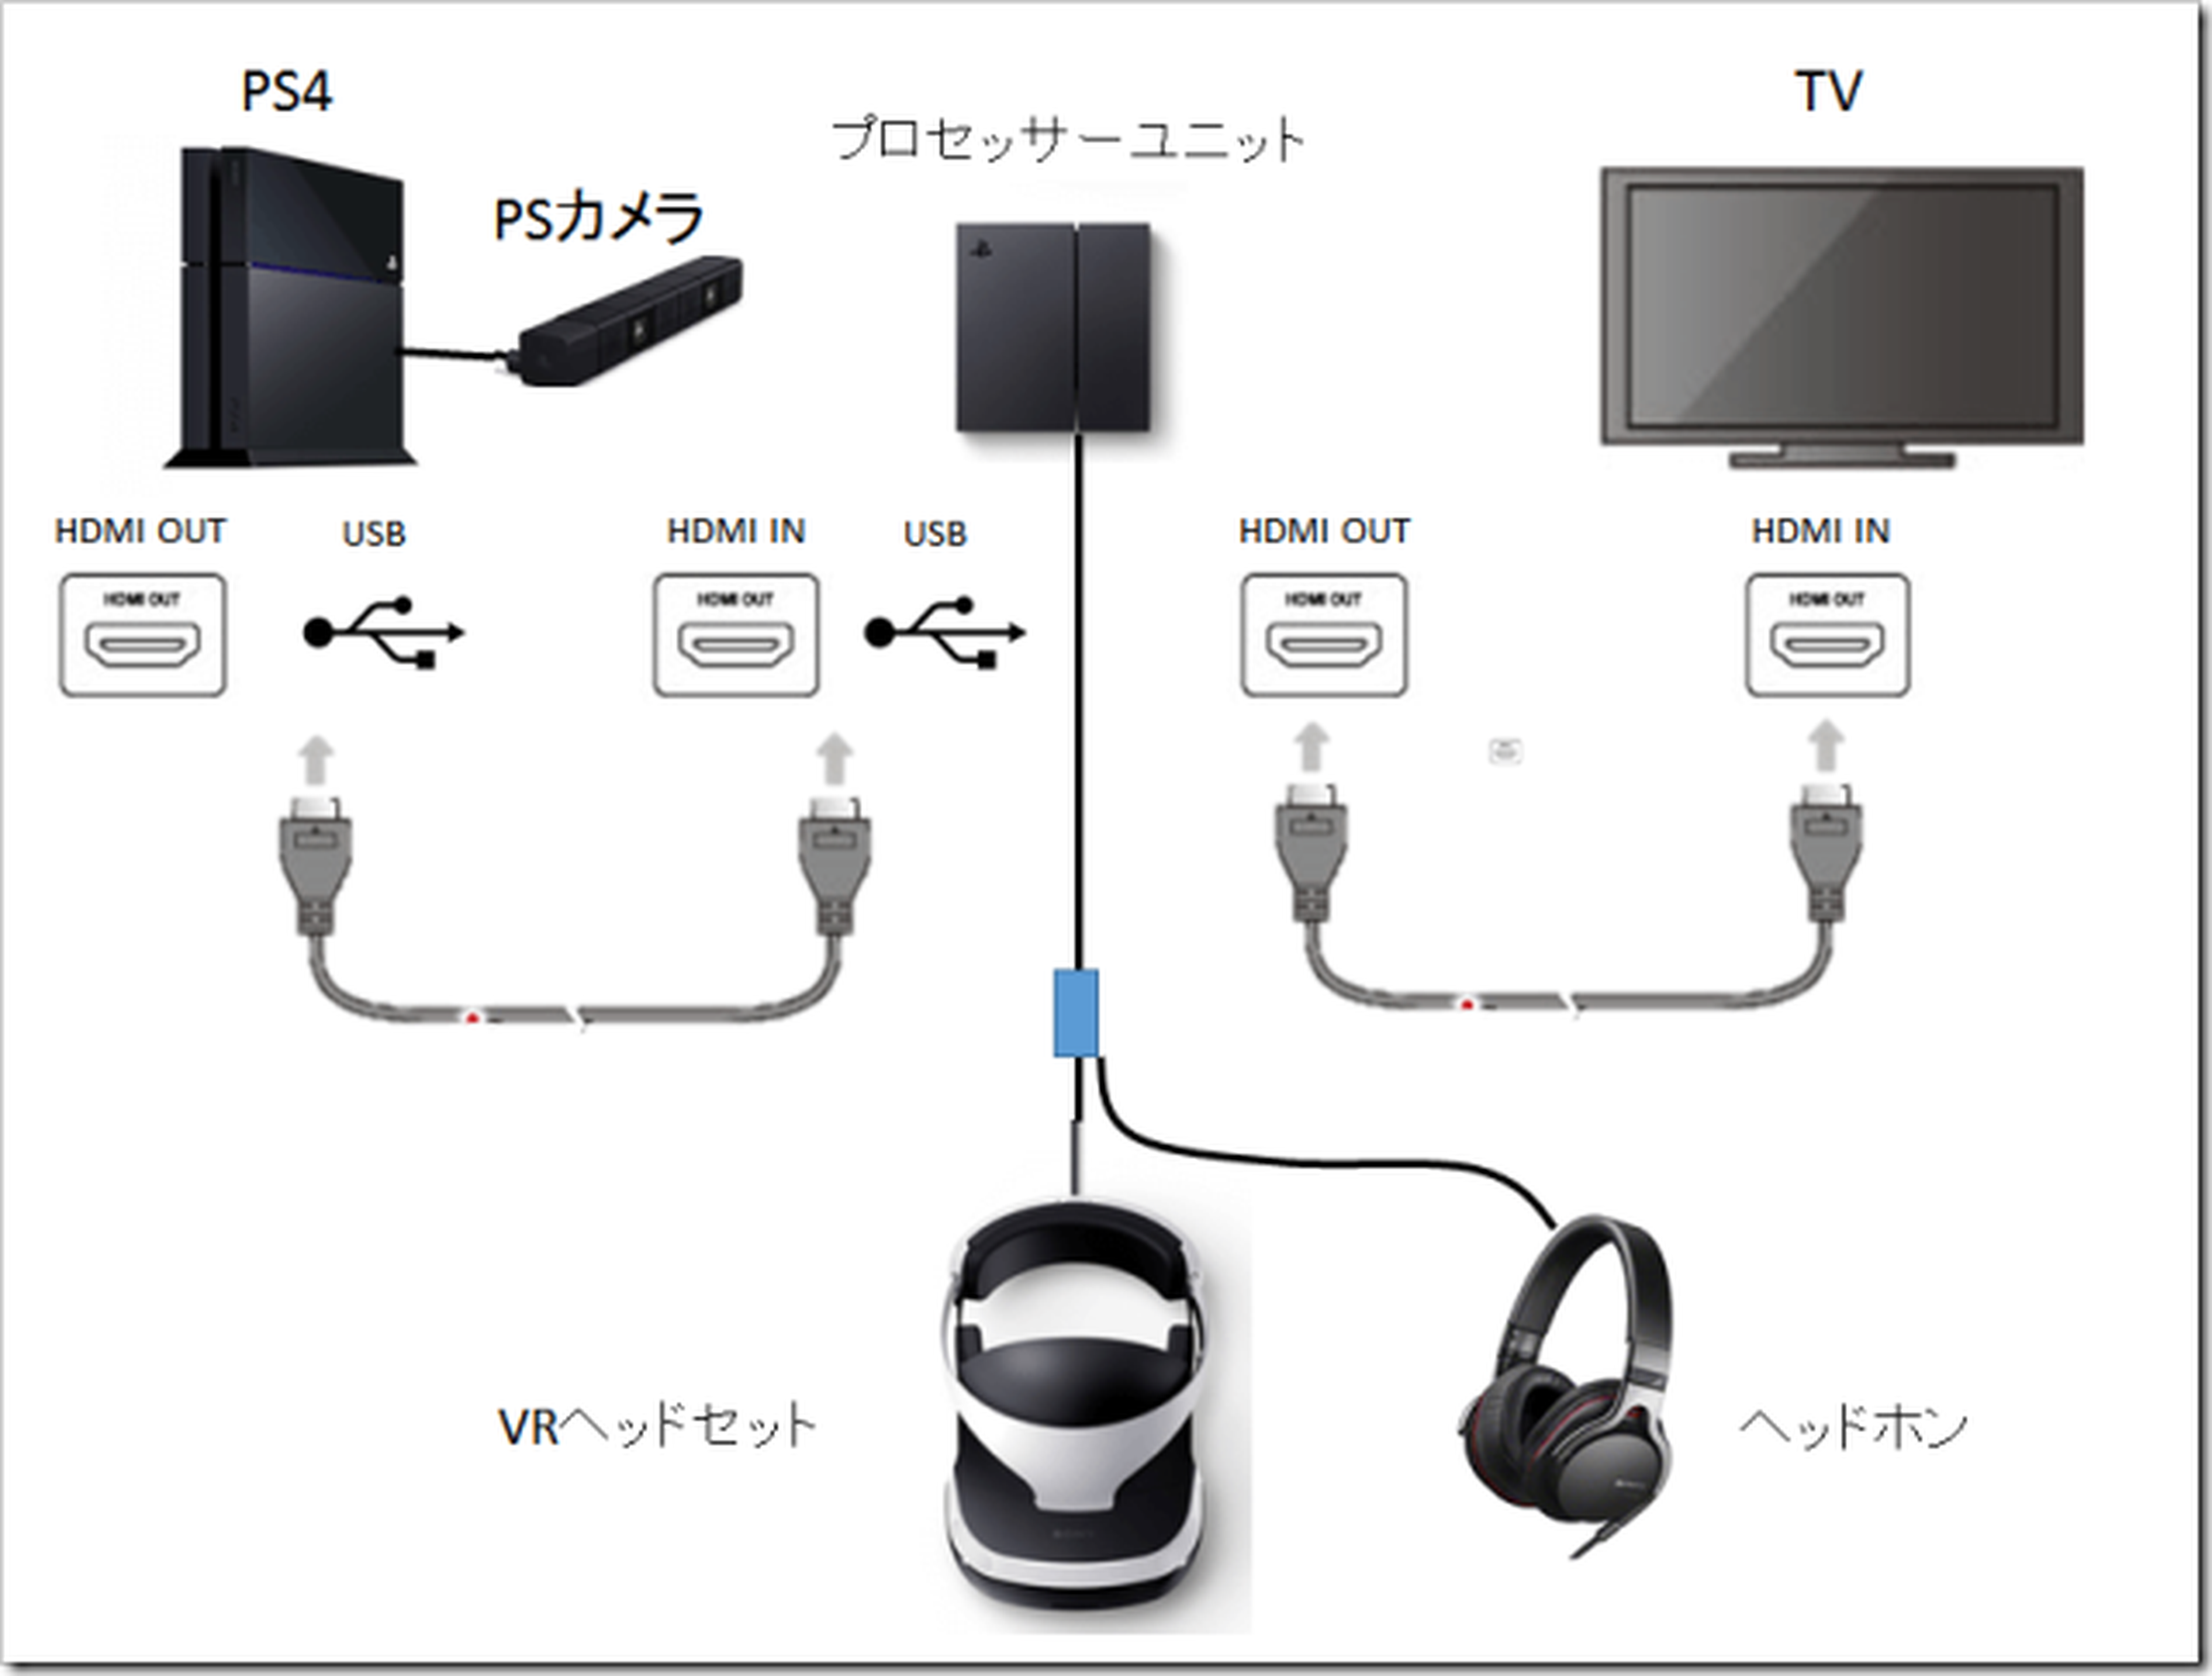 Playstation Realidad Virtual VR2 Gafas Originales de Sony para PS5 COMO  NUEVO POCAS HORAS DE USO